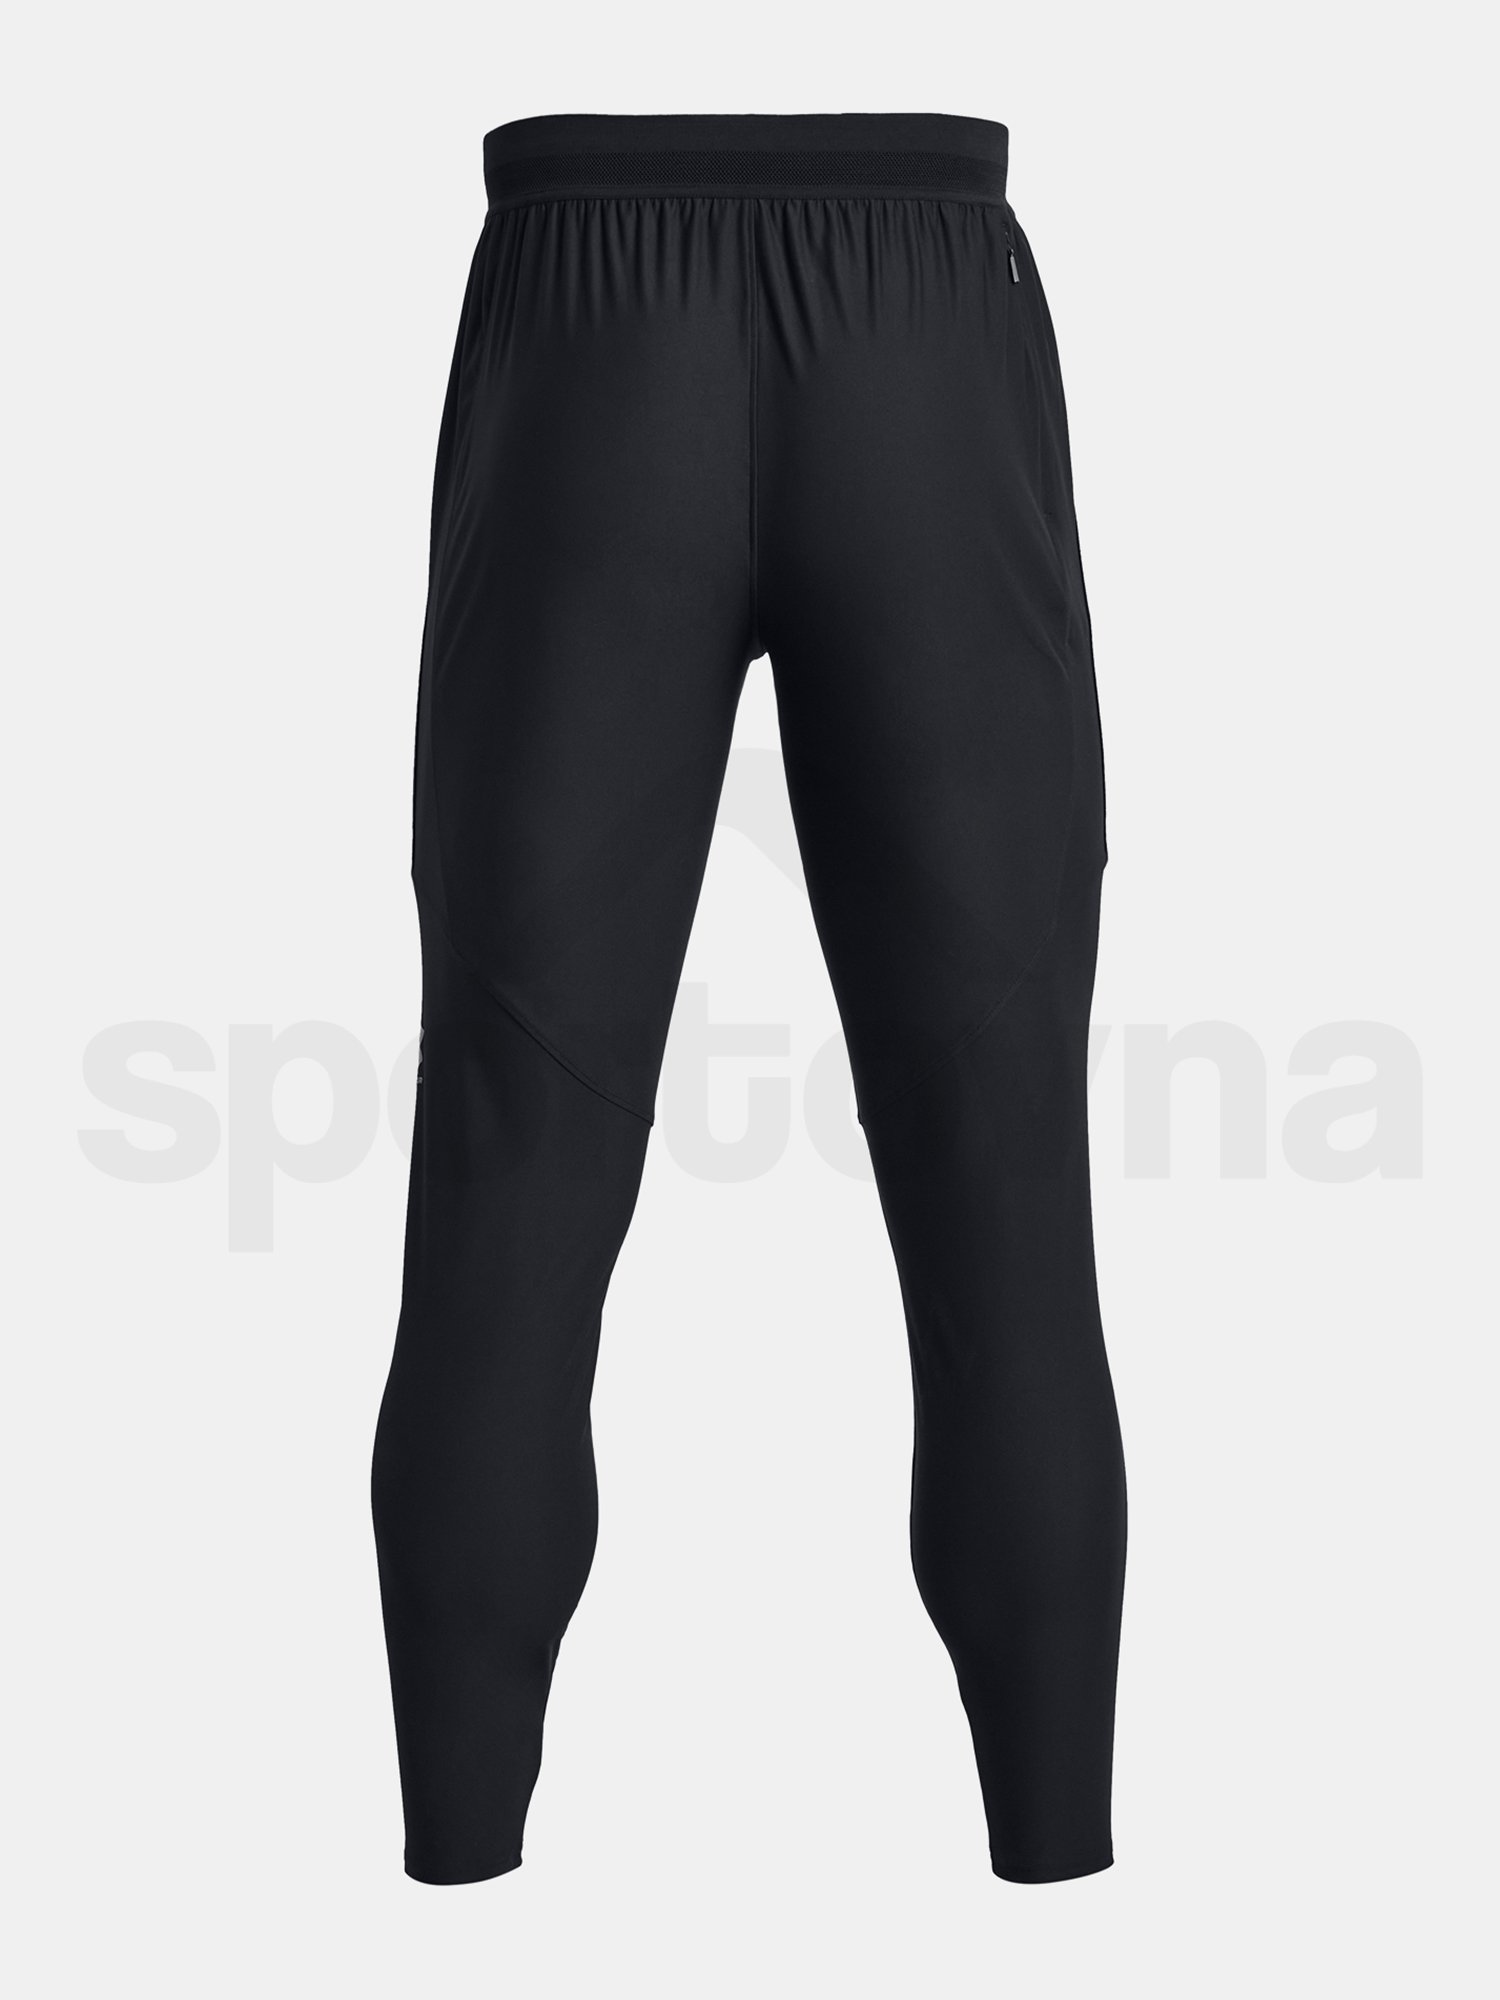 Sportovní kalhoty Under Armour UA M's Ch. Pro Pant M - černá